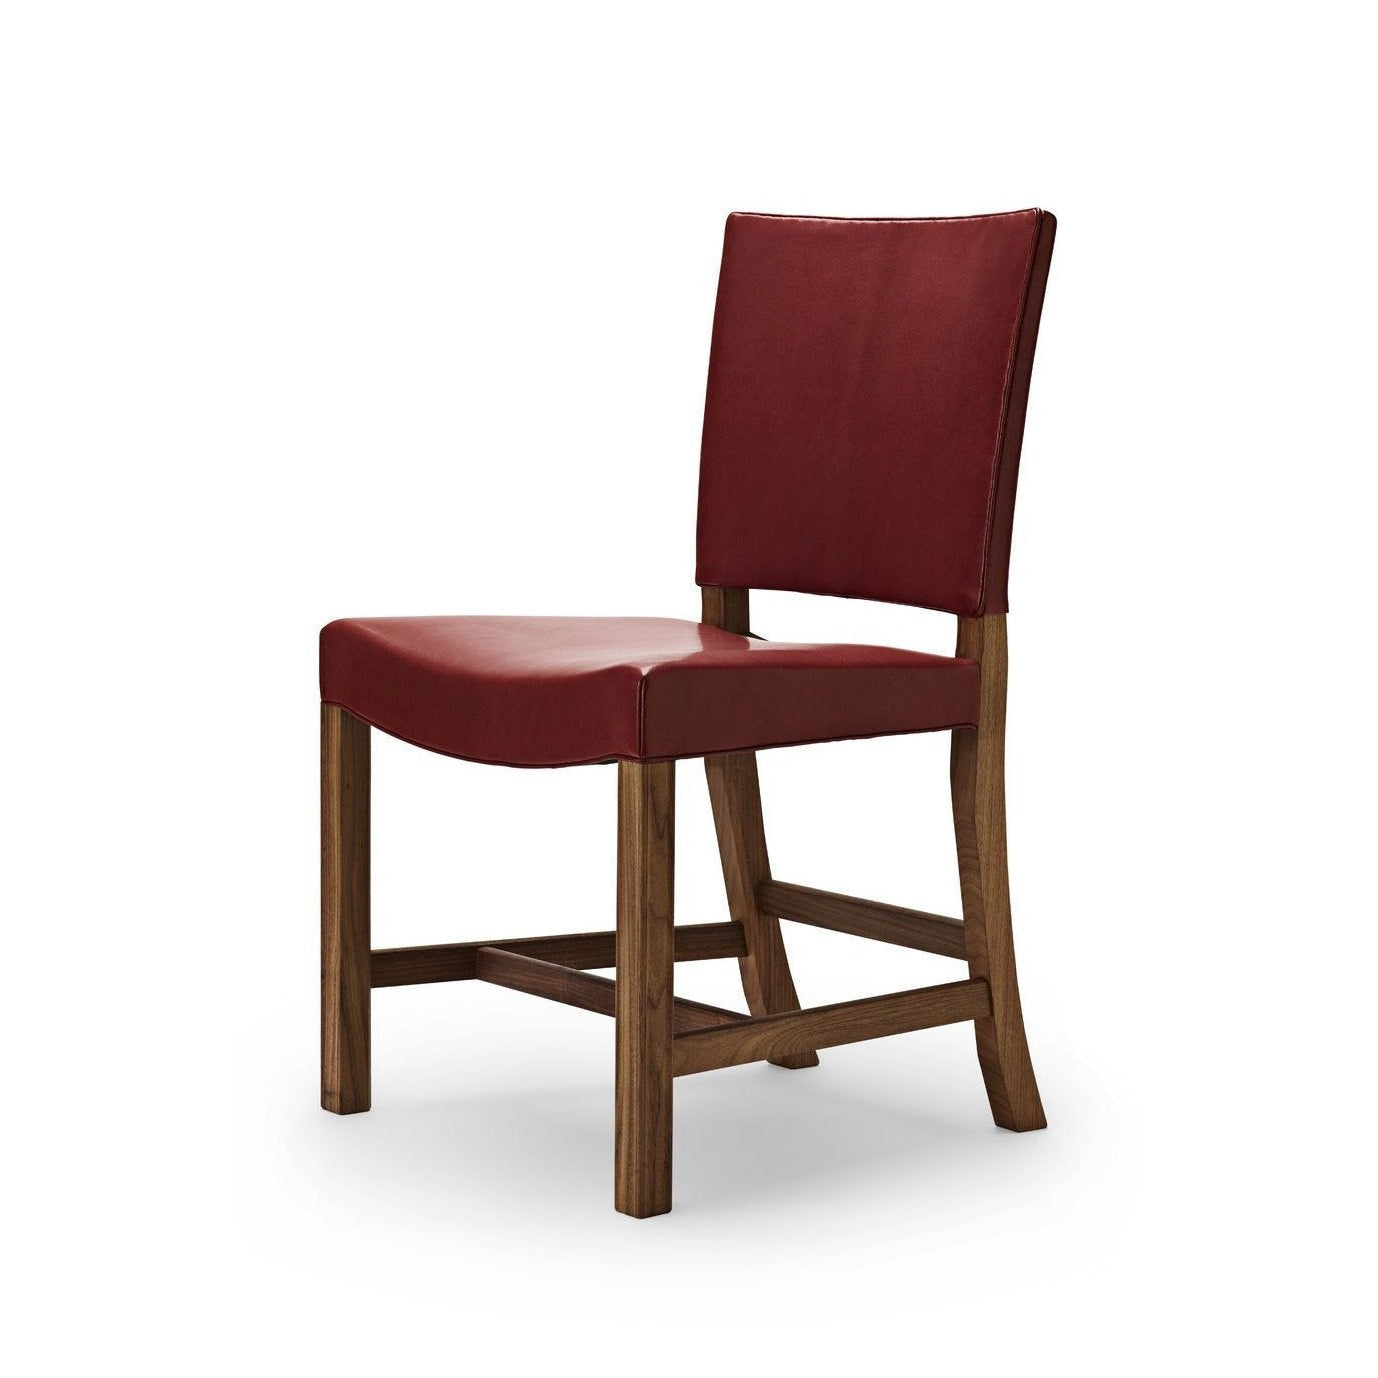 Carl Hansen KK47510 De rode stoel, gelakte walnoot/rode geitenhuid